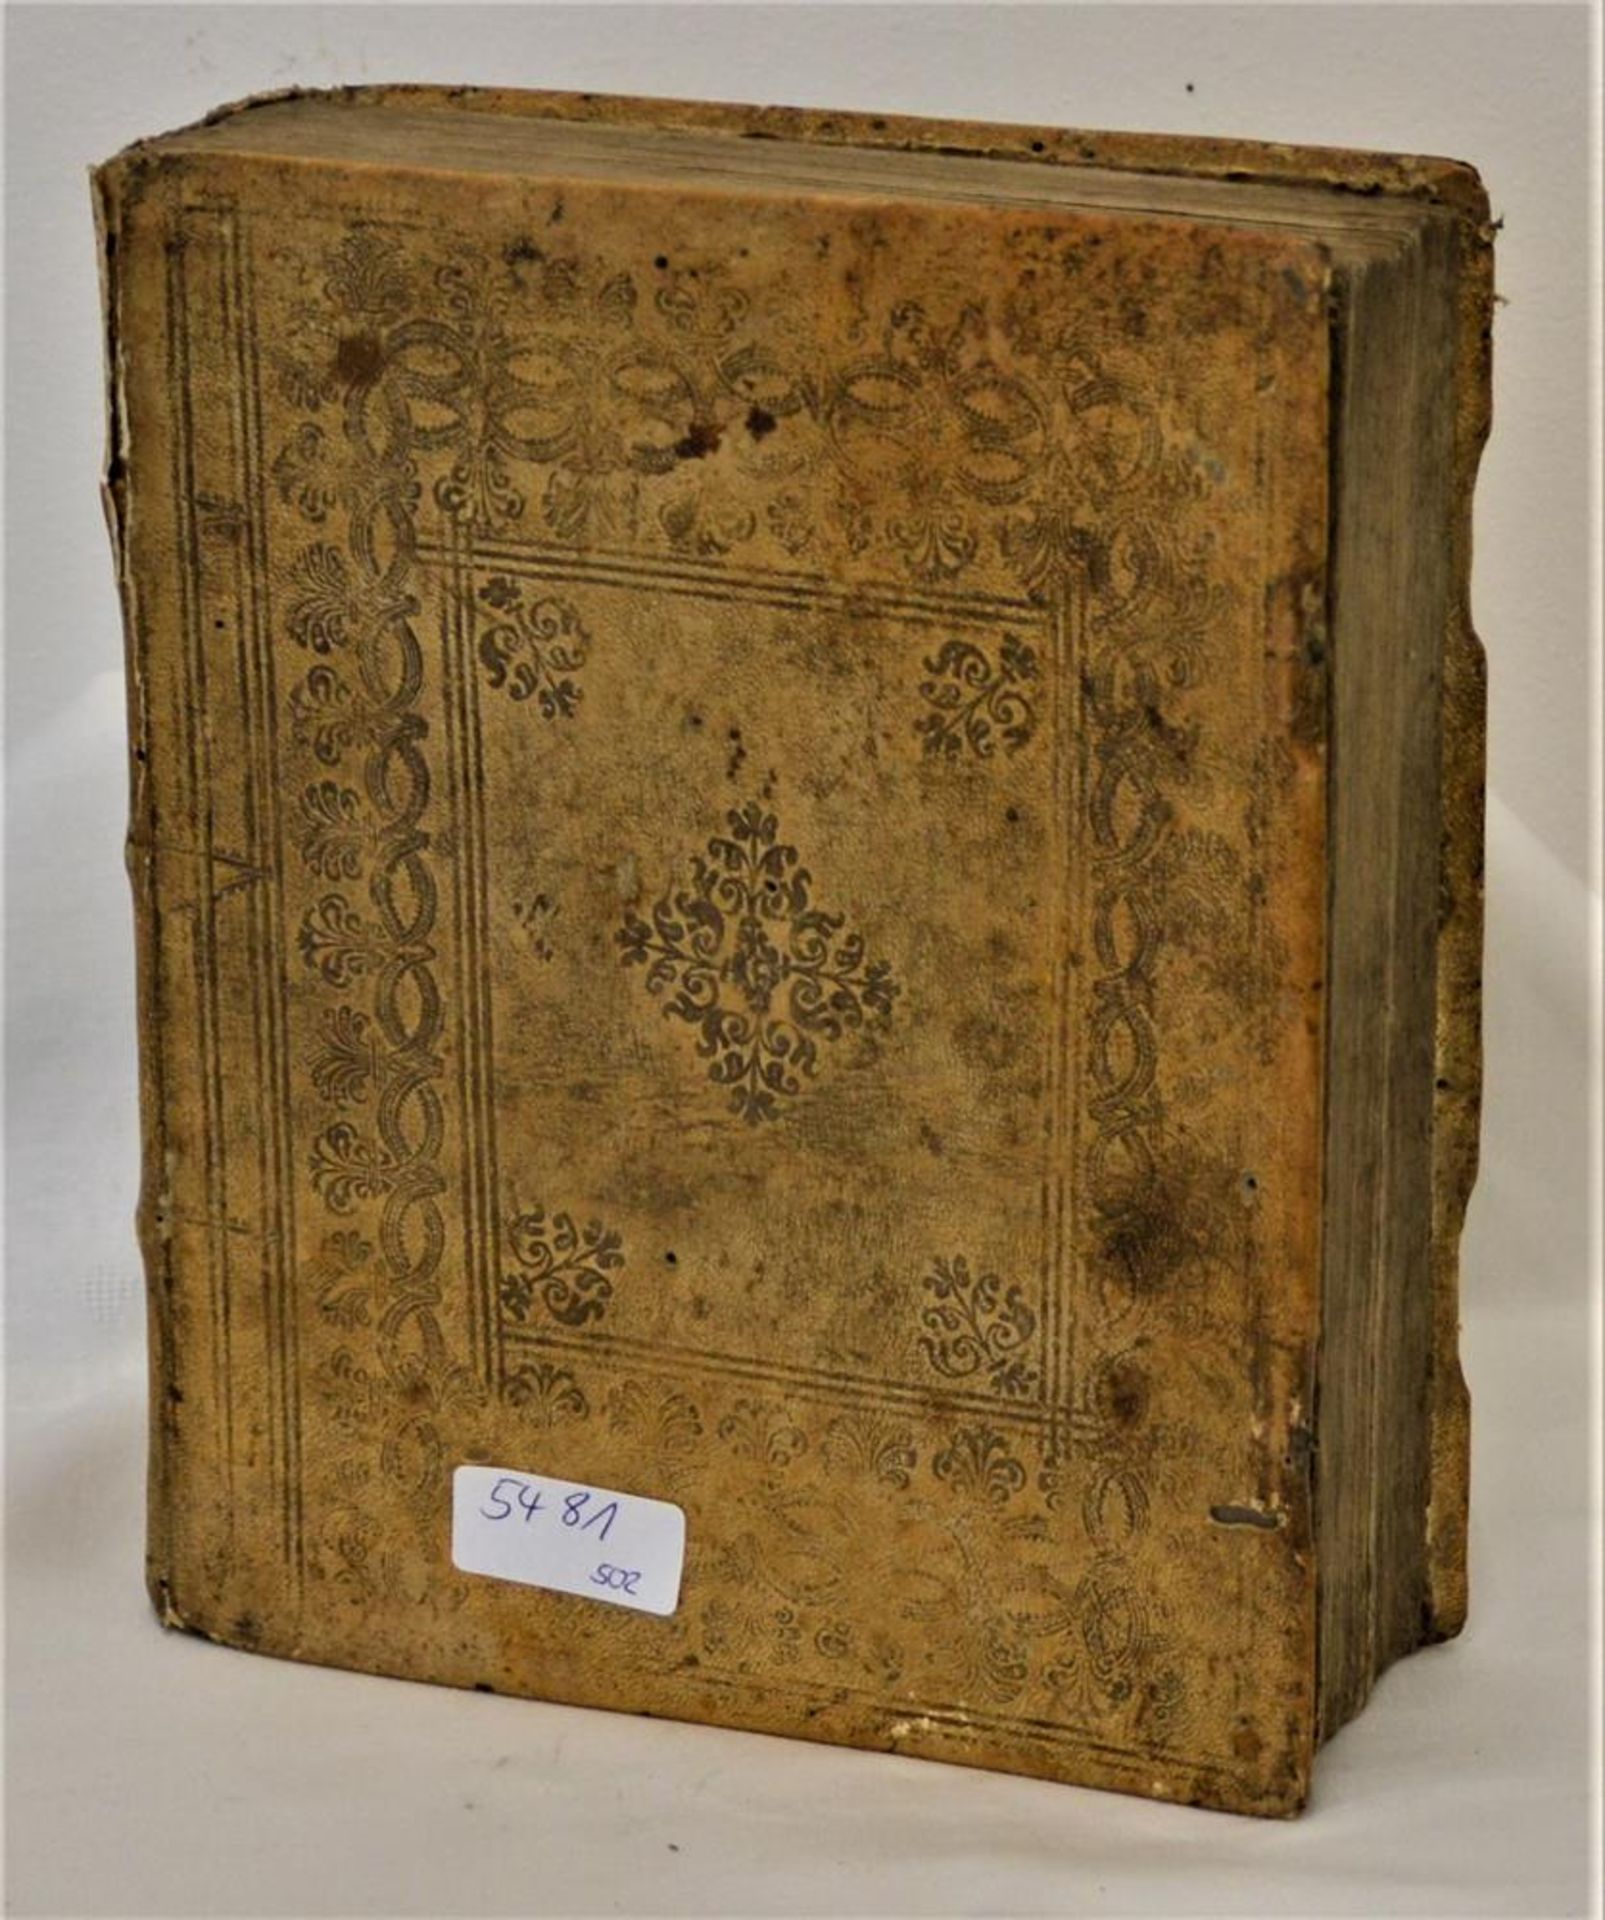 Christliches Hausbuch oder das große Leben Christi, von 1789 Augsburg, Casparo Erhard, Zweiter Teil,